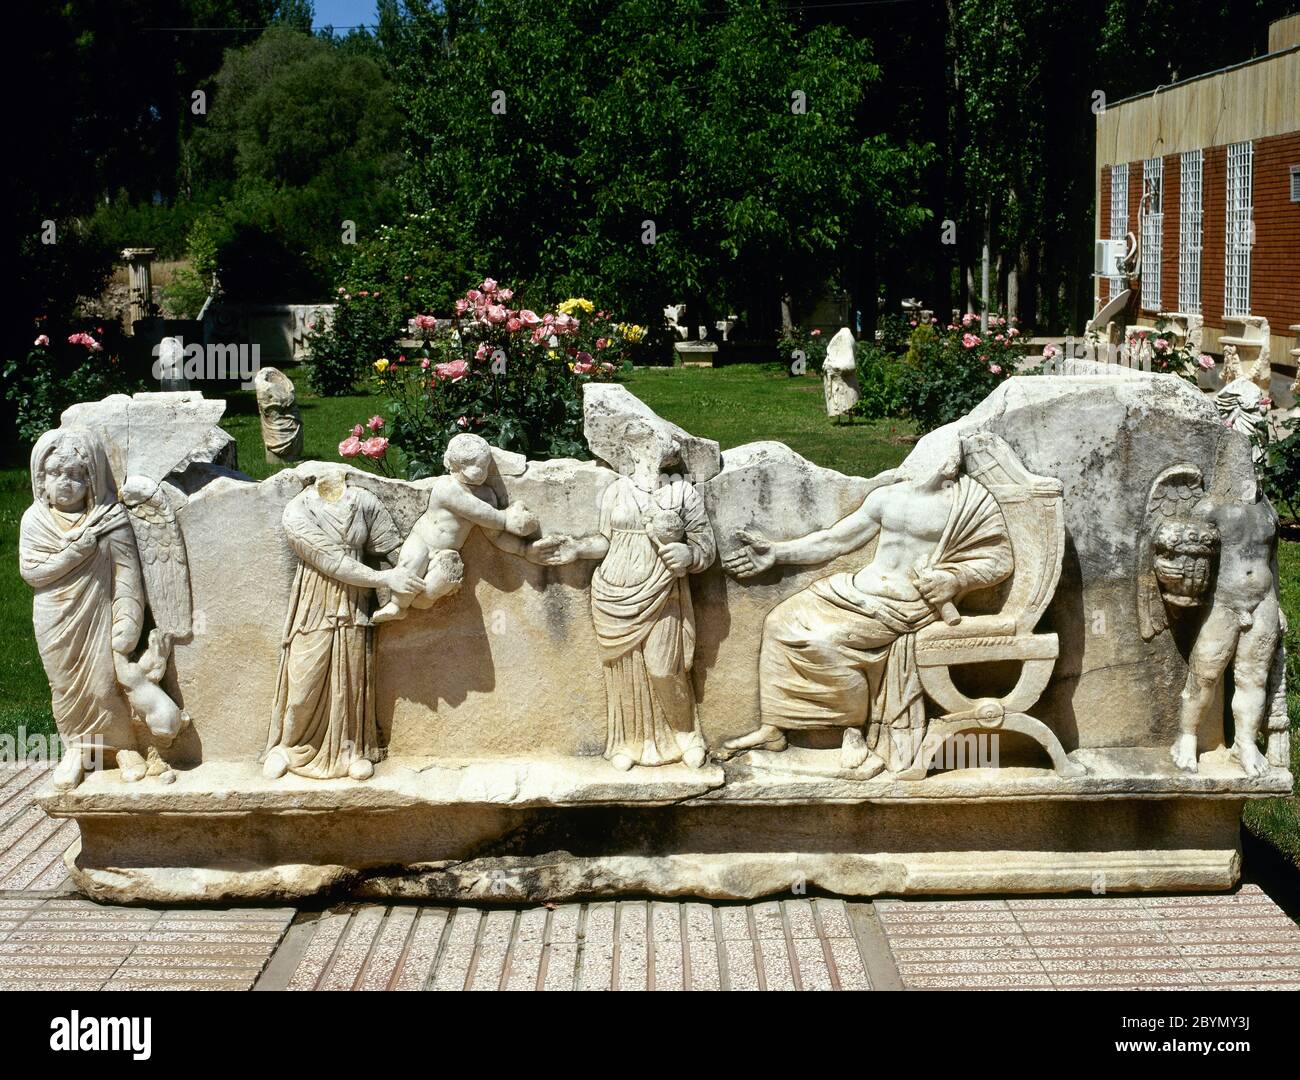 Sarcophage romain décoré de reliefs. Scène familiale. Fille esclave montrant un bébé à un couple marié. Deux putti sont représentés aux deux extrémités du sarcophage. Musée Aphodisias. Turquie Banque D'Images